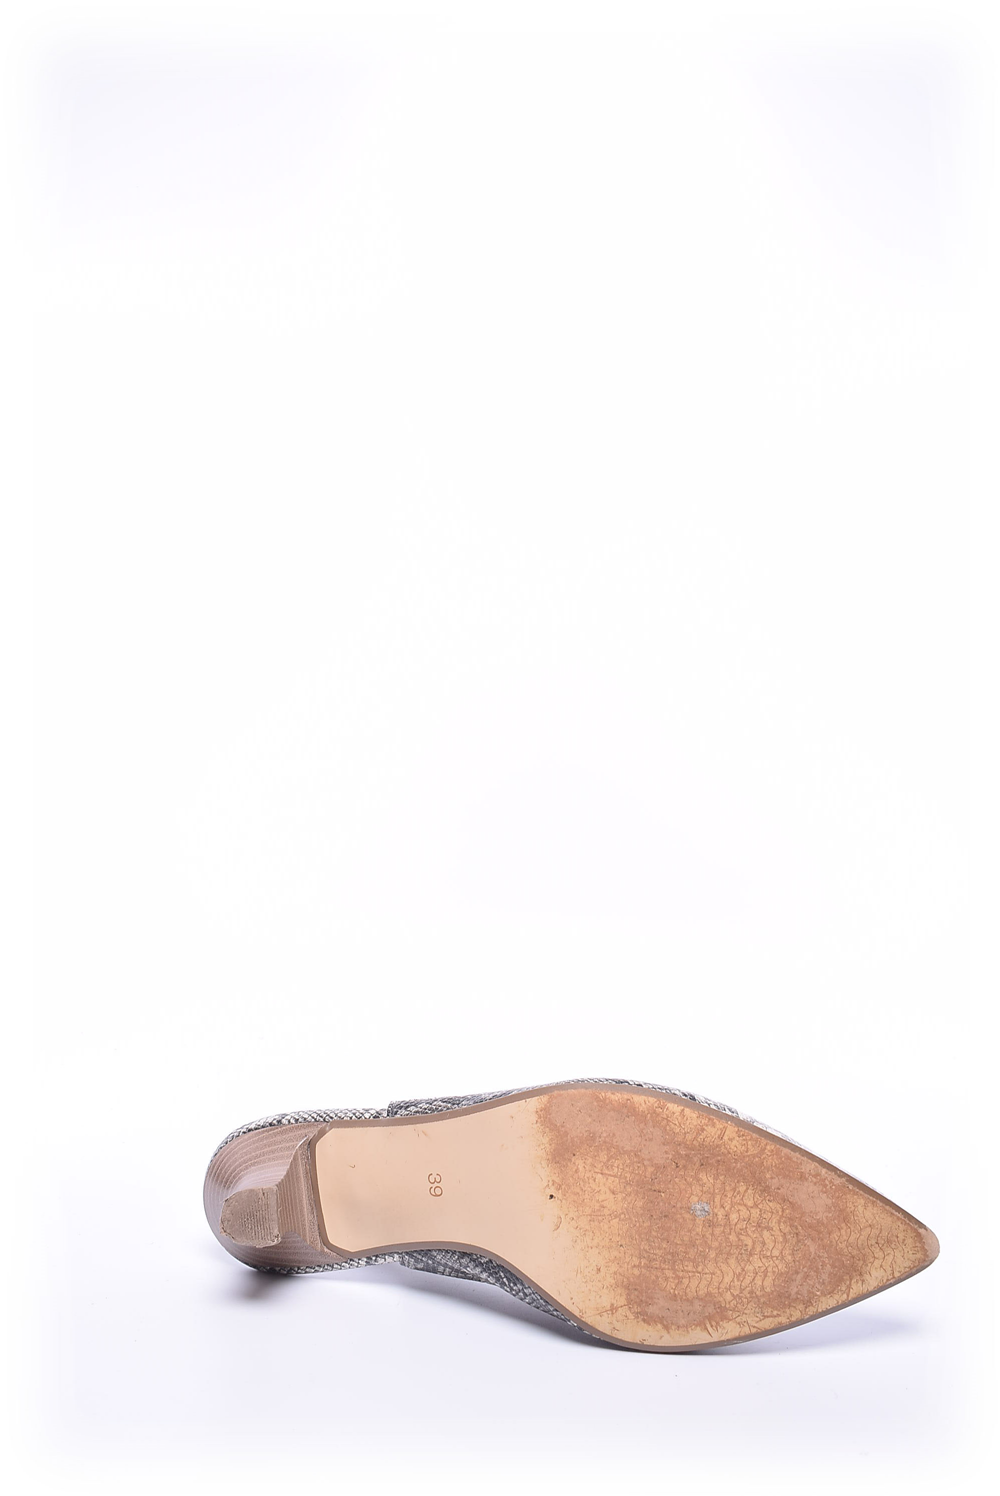 Sandale dama [2]